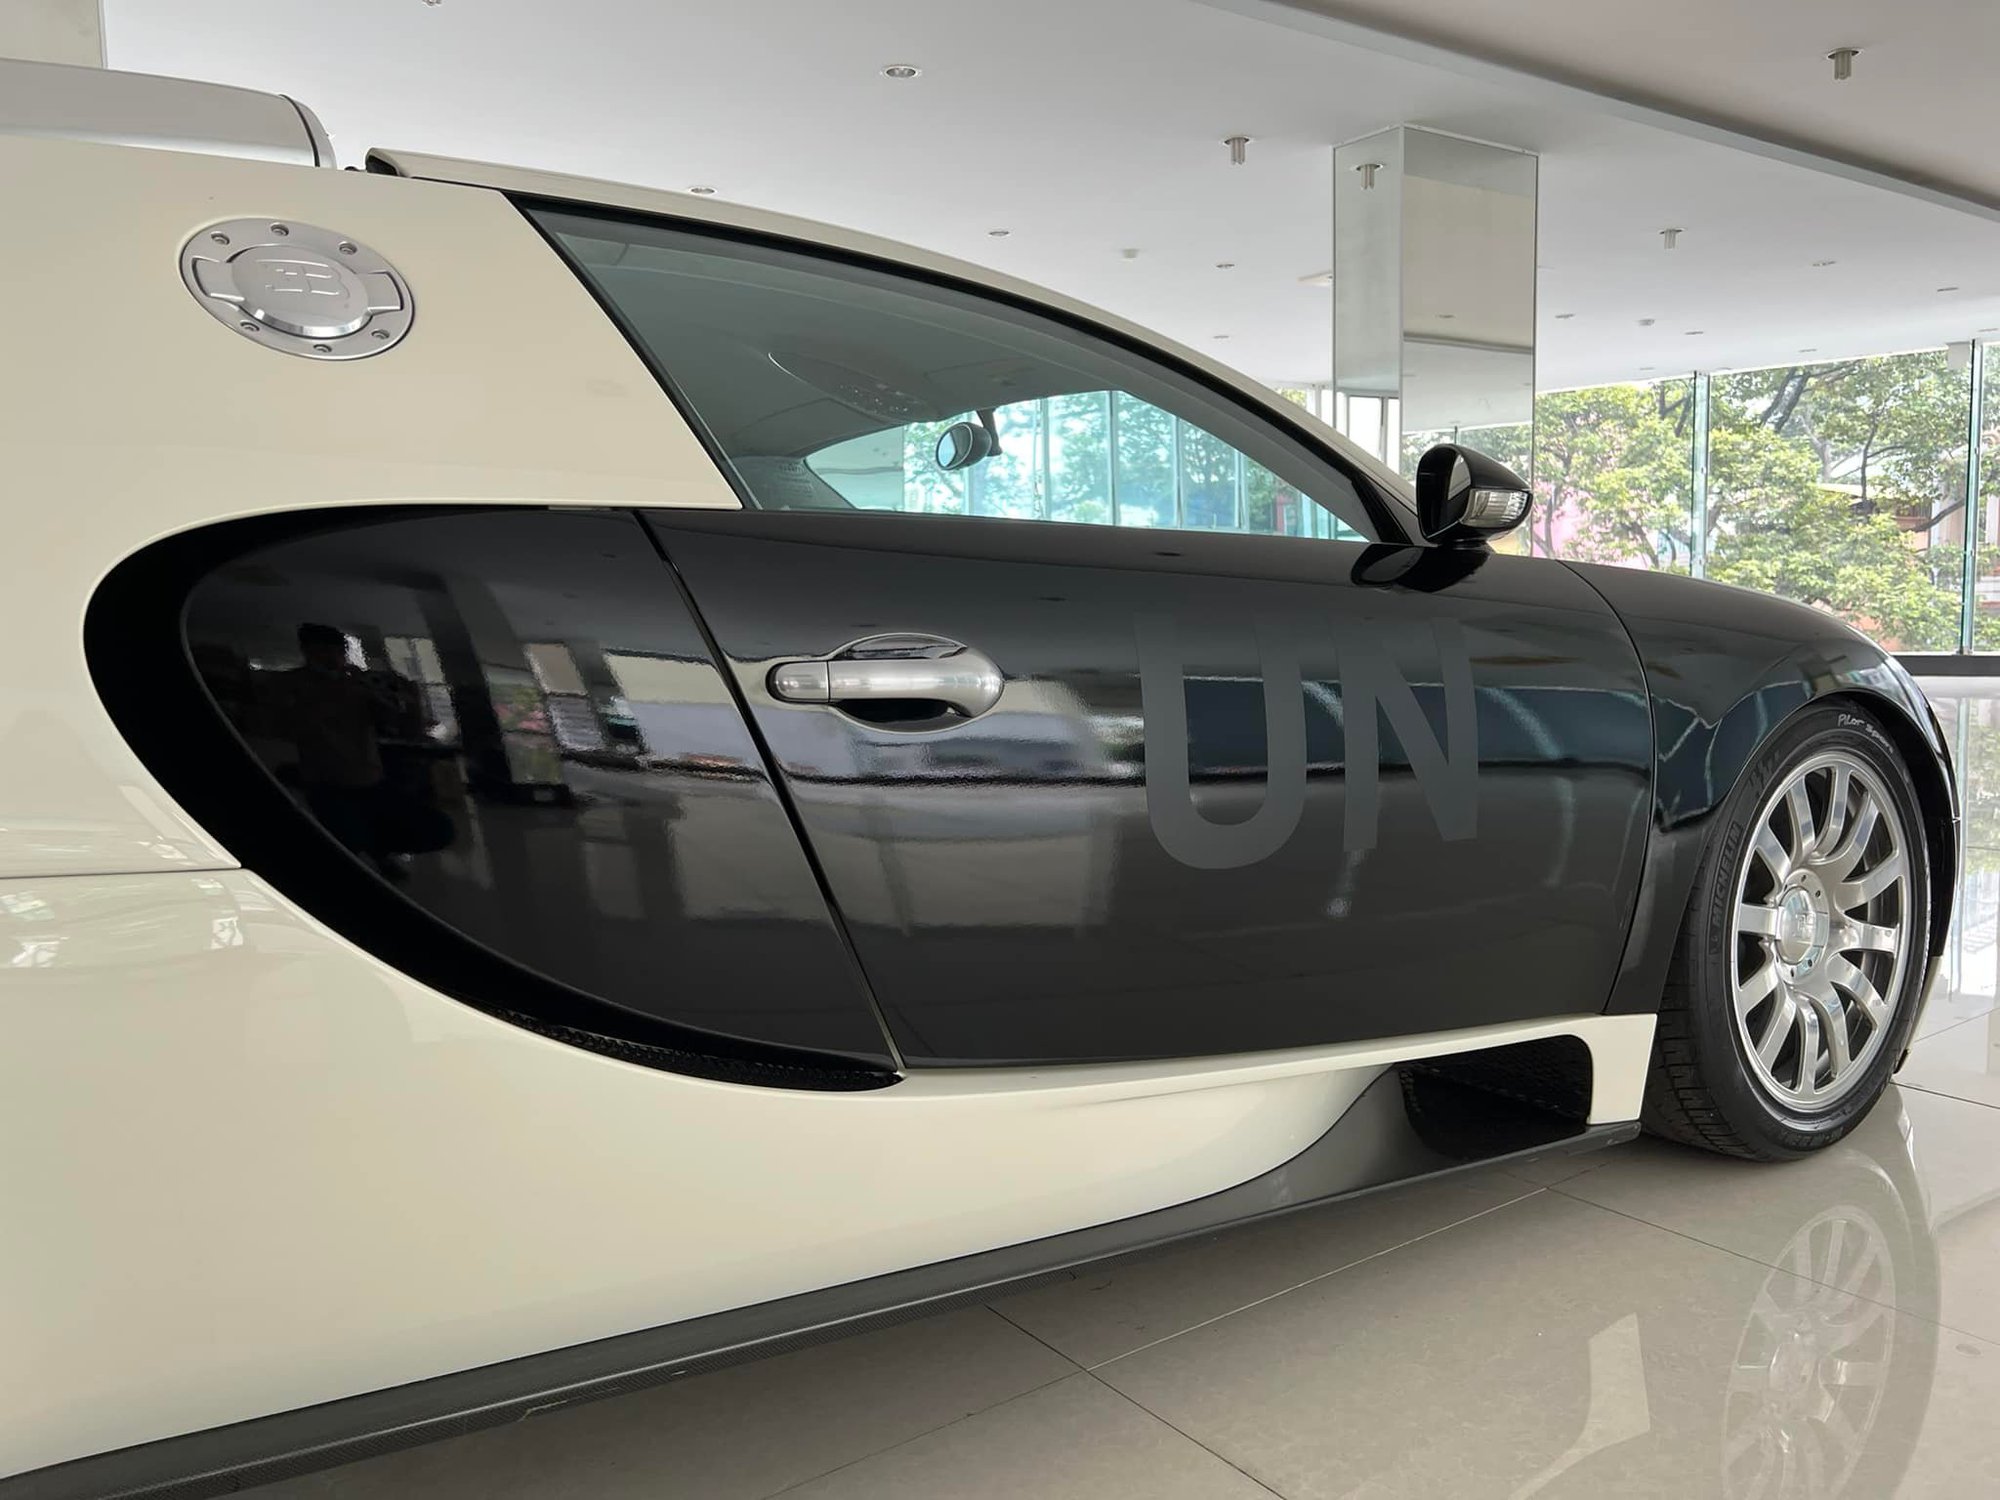 Bugatti Veyron độc nhất Việt Nam của Trung Nguyên Legend thay bộ cánh vừa lạ cũng vừa quen, vẫn đúng phong cách của vị Chủ tịch - Ảnh 2.